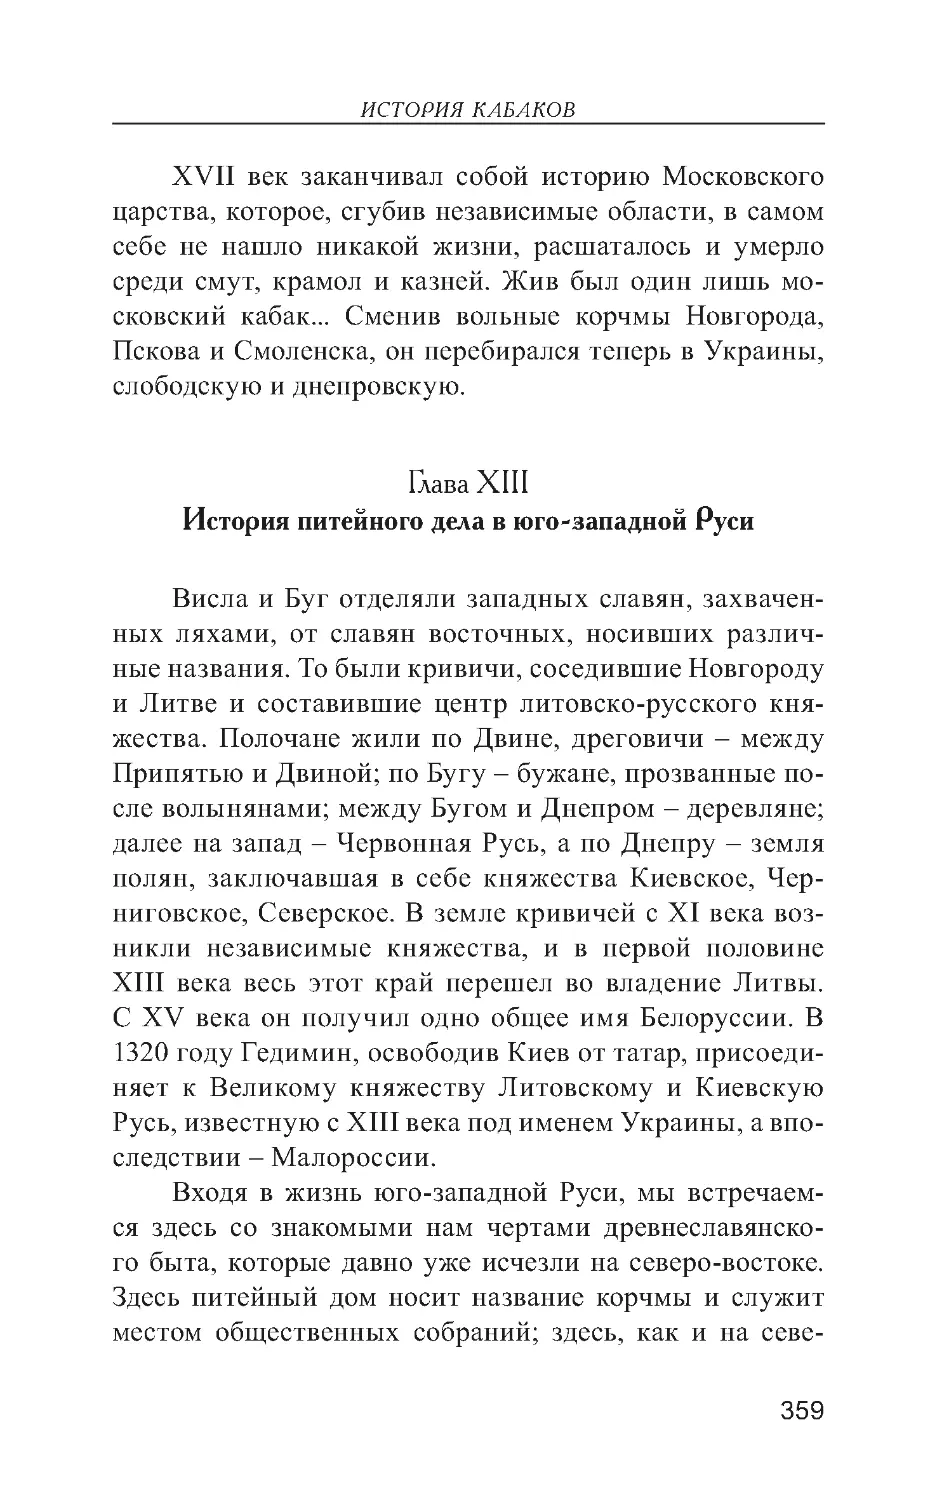 Глава XIII. История питейного дела в юго-западной Руси